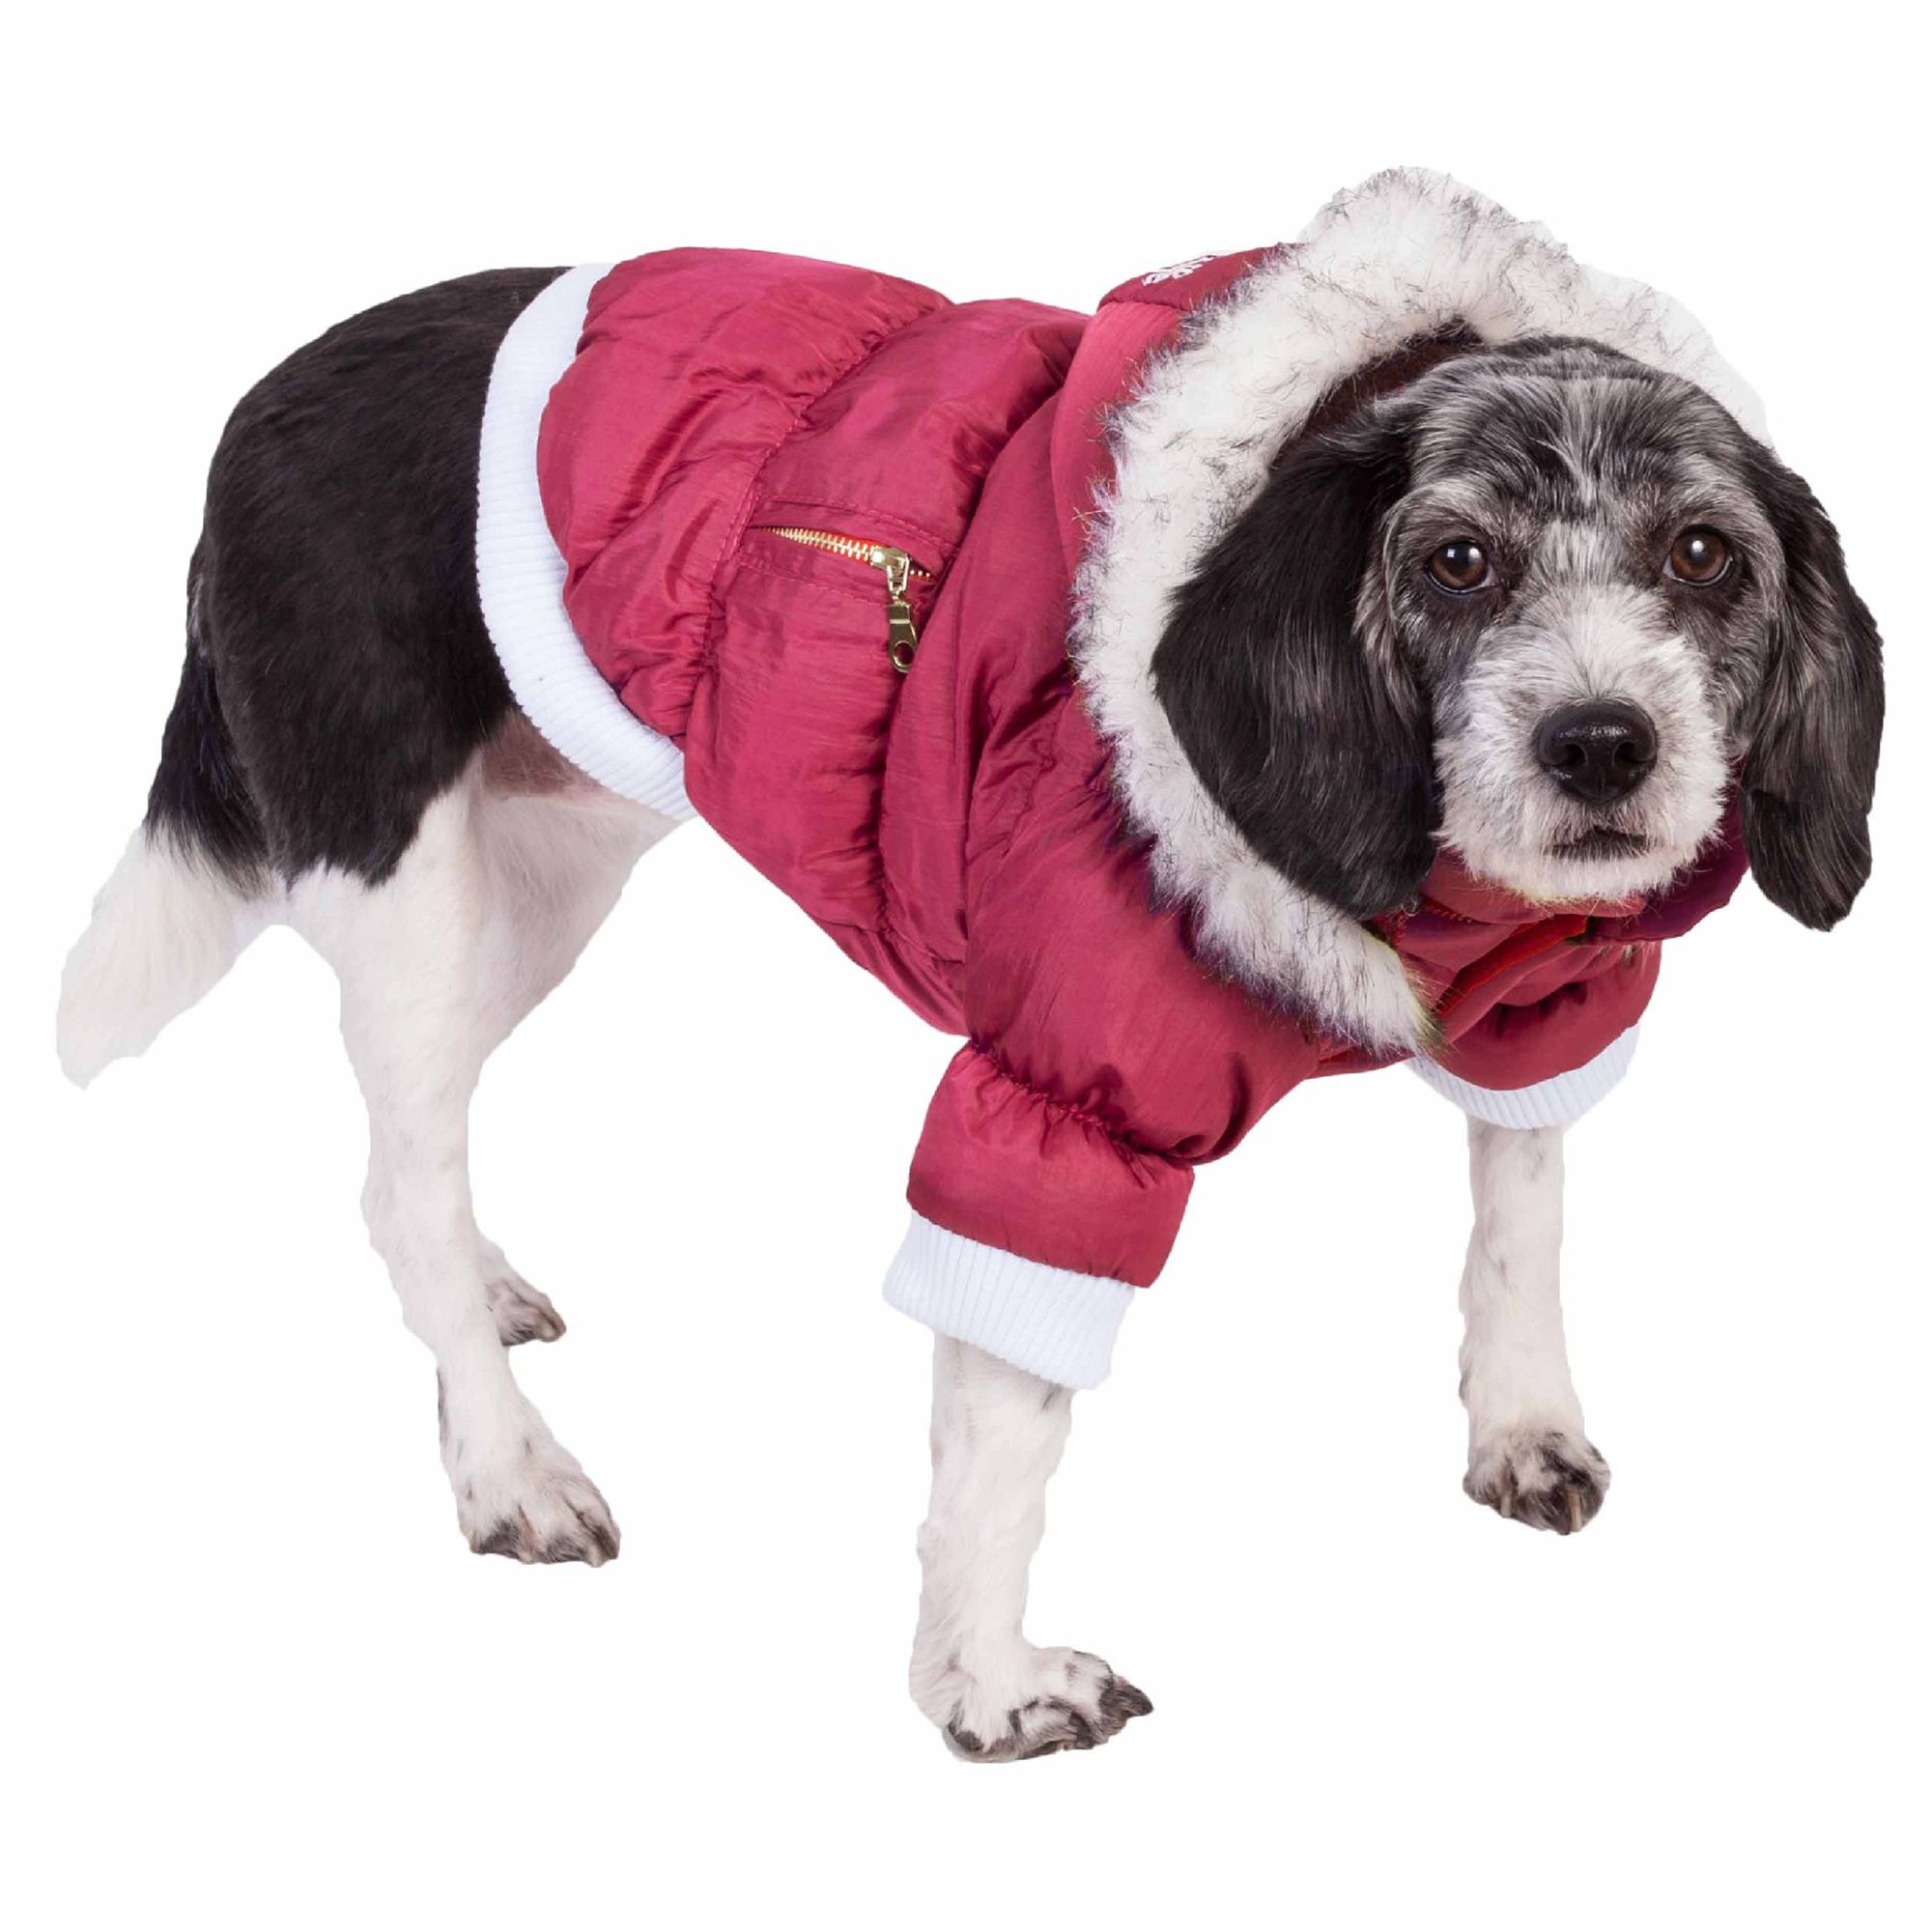 Пес лайф. Куртка Fashion Dog. Dog Coat. Top Dog одежда. Fur Coat for Dogs.